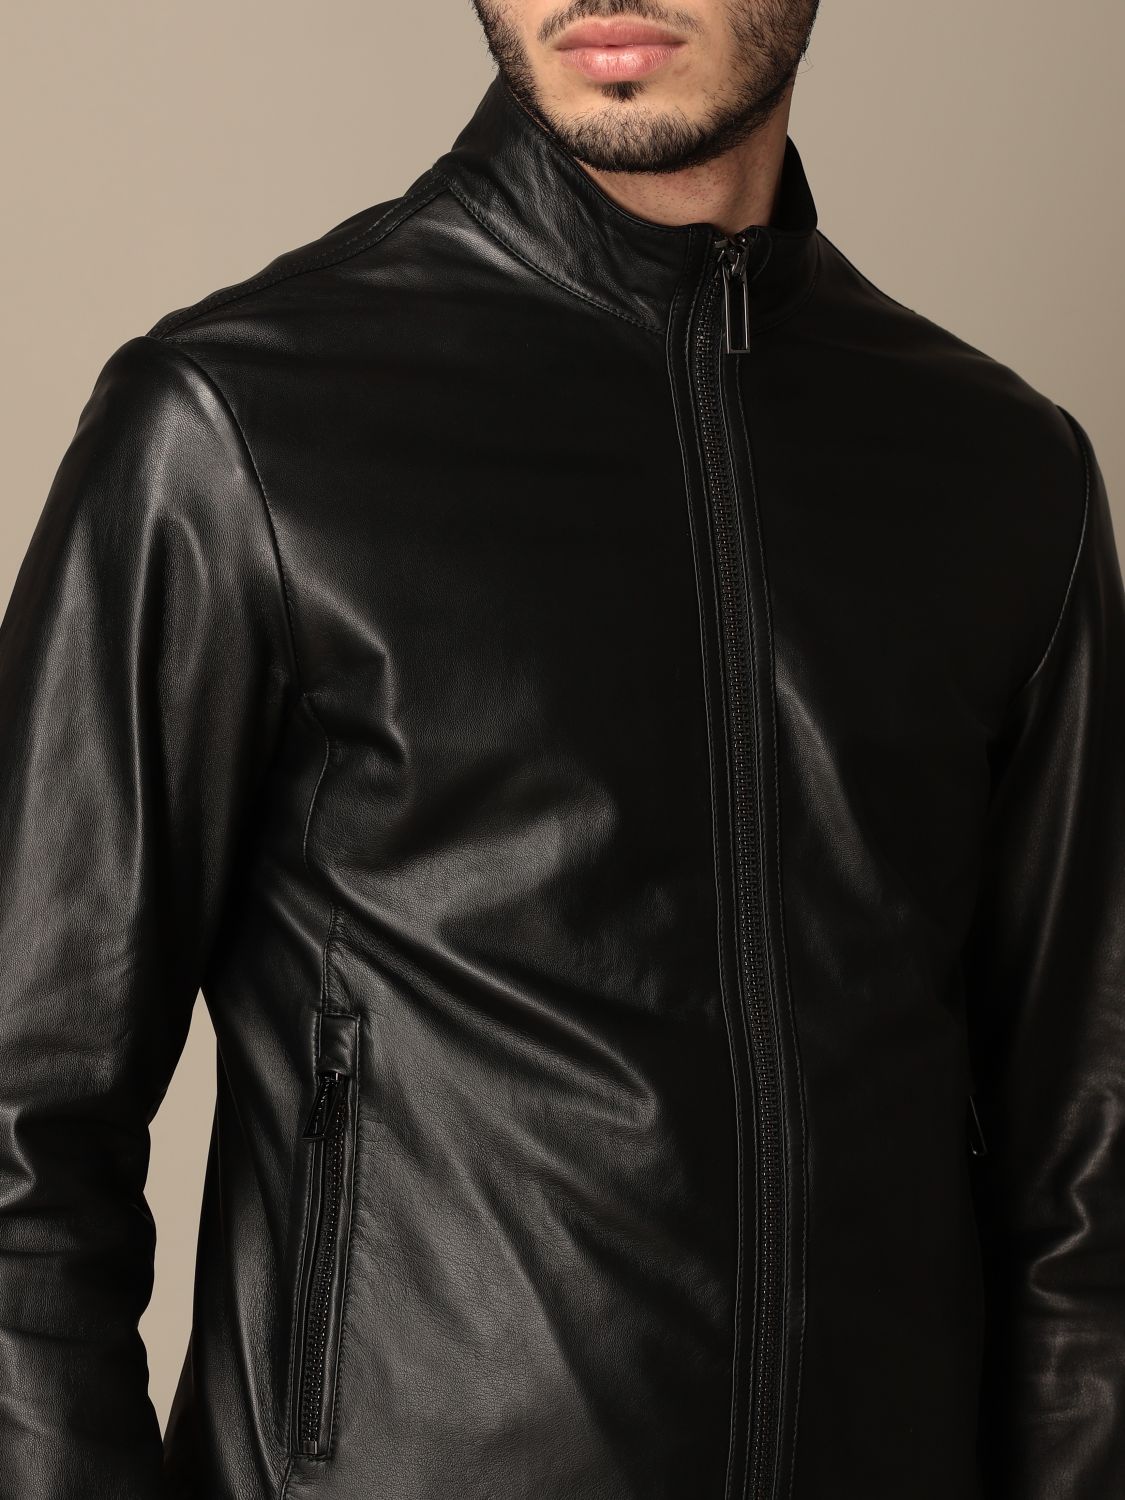 エンポリオアルマーニ(EMPORIO ARMANI): ジャケット メンズ - ブラック | ジャケット エンポリオアルマーニ A1R04P